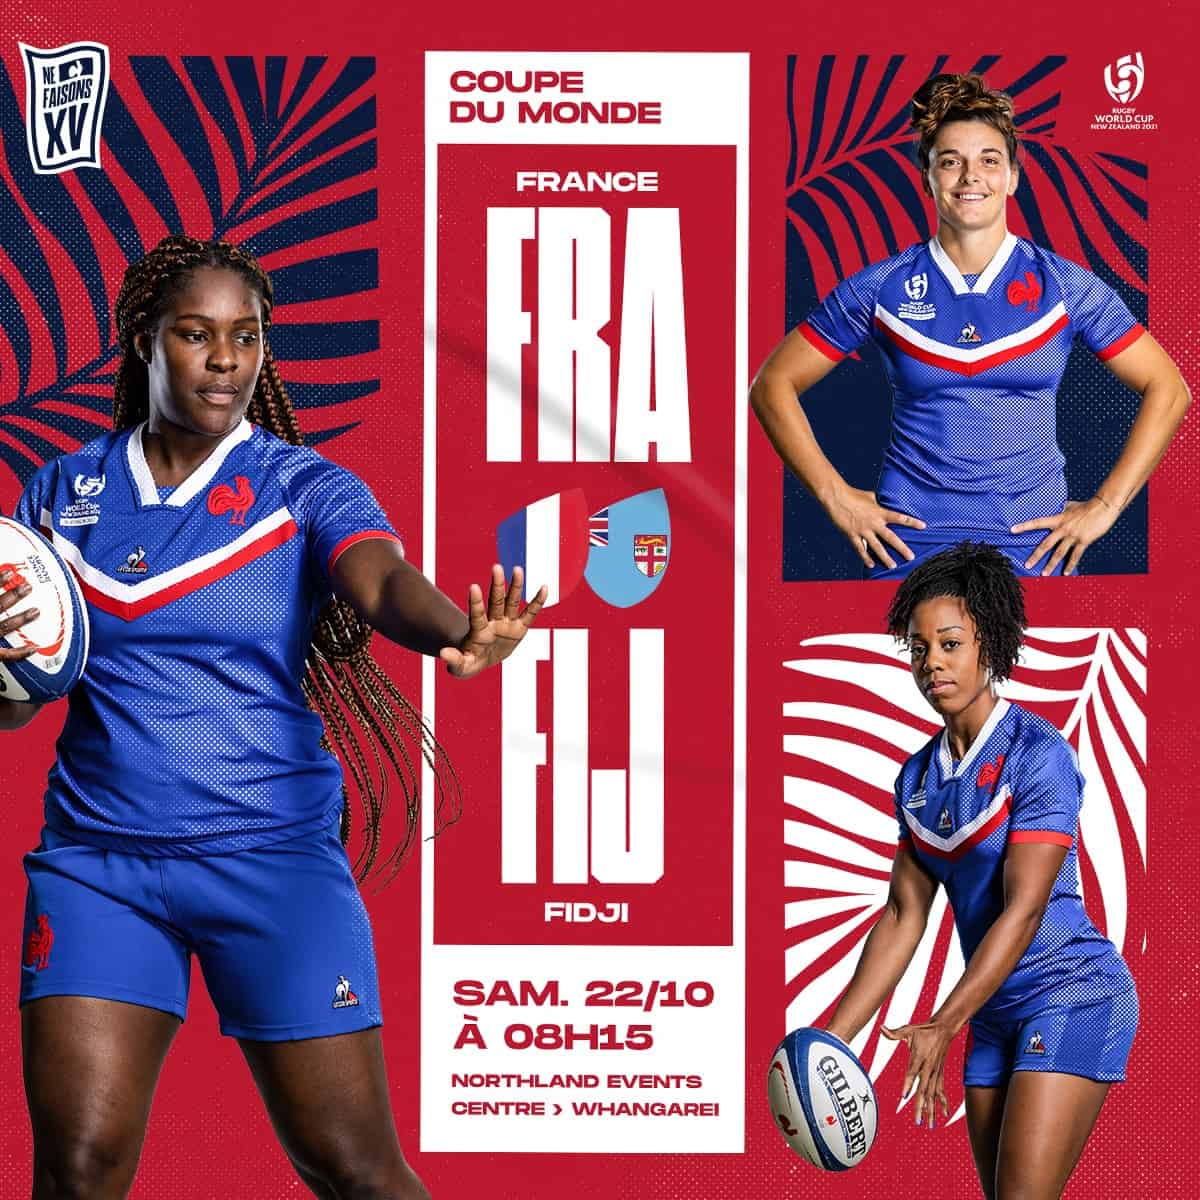 France Fidji : les compositions des équipes